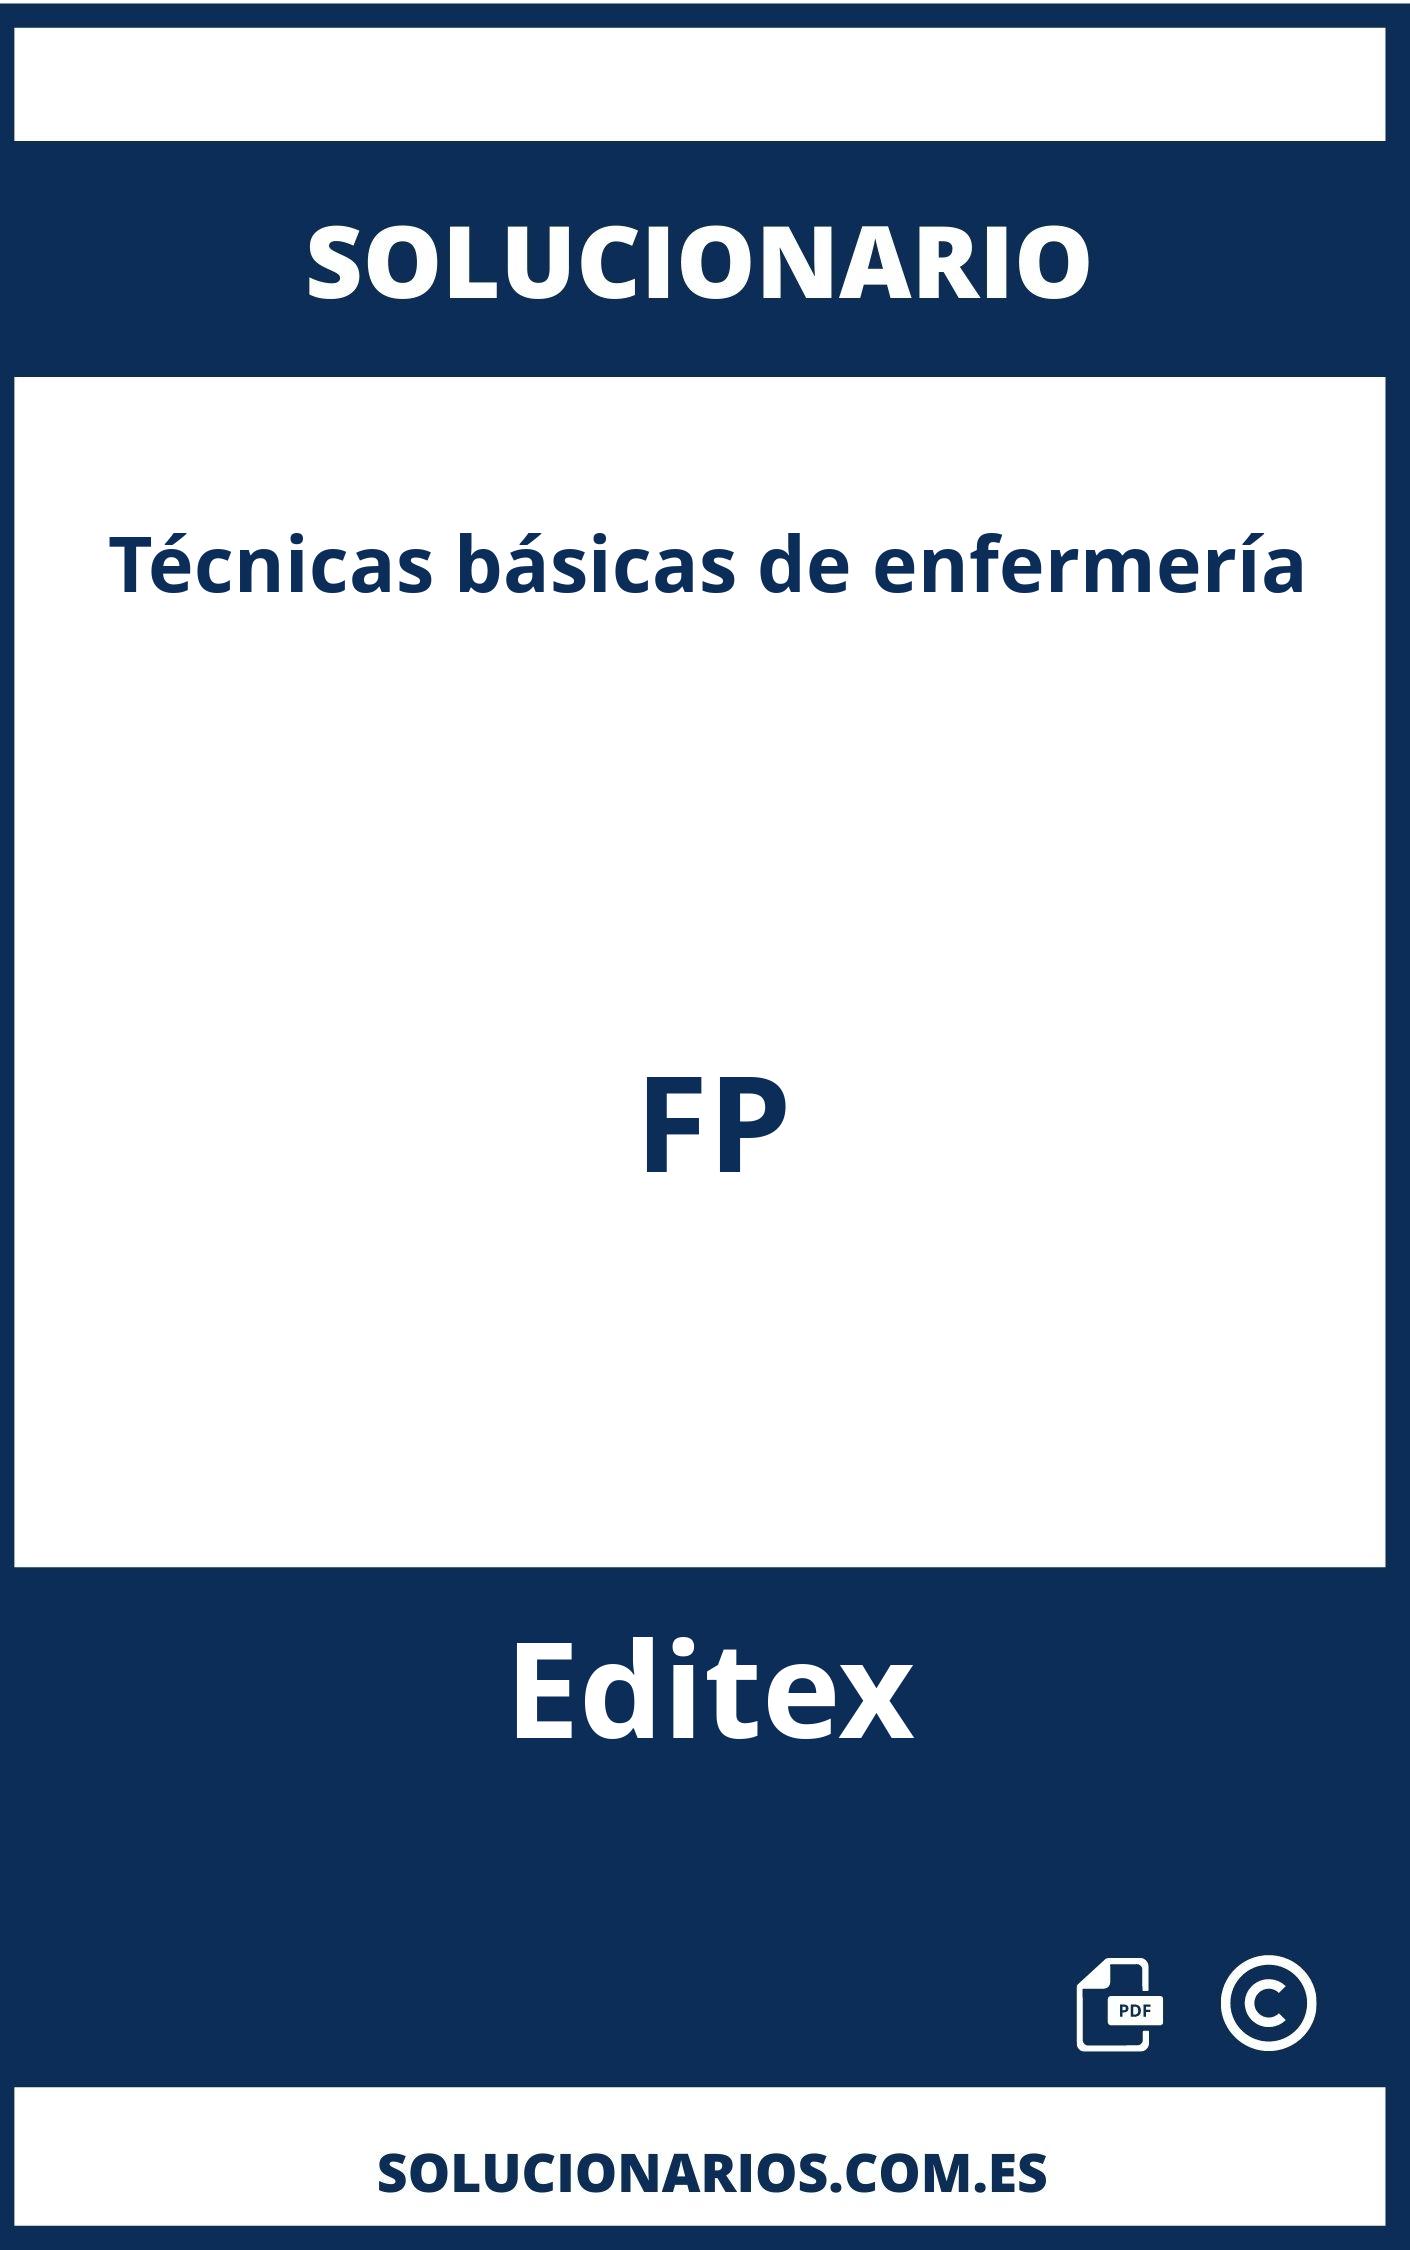 Solucionario Técnicas básicas de enfermería FP Editex